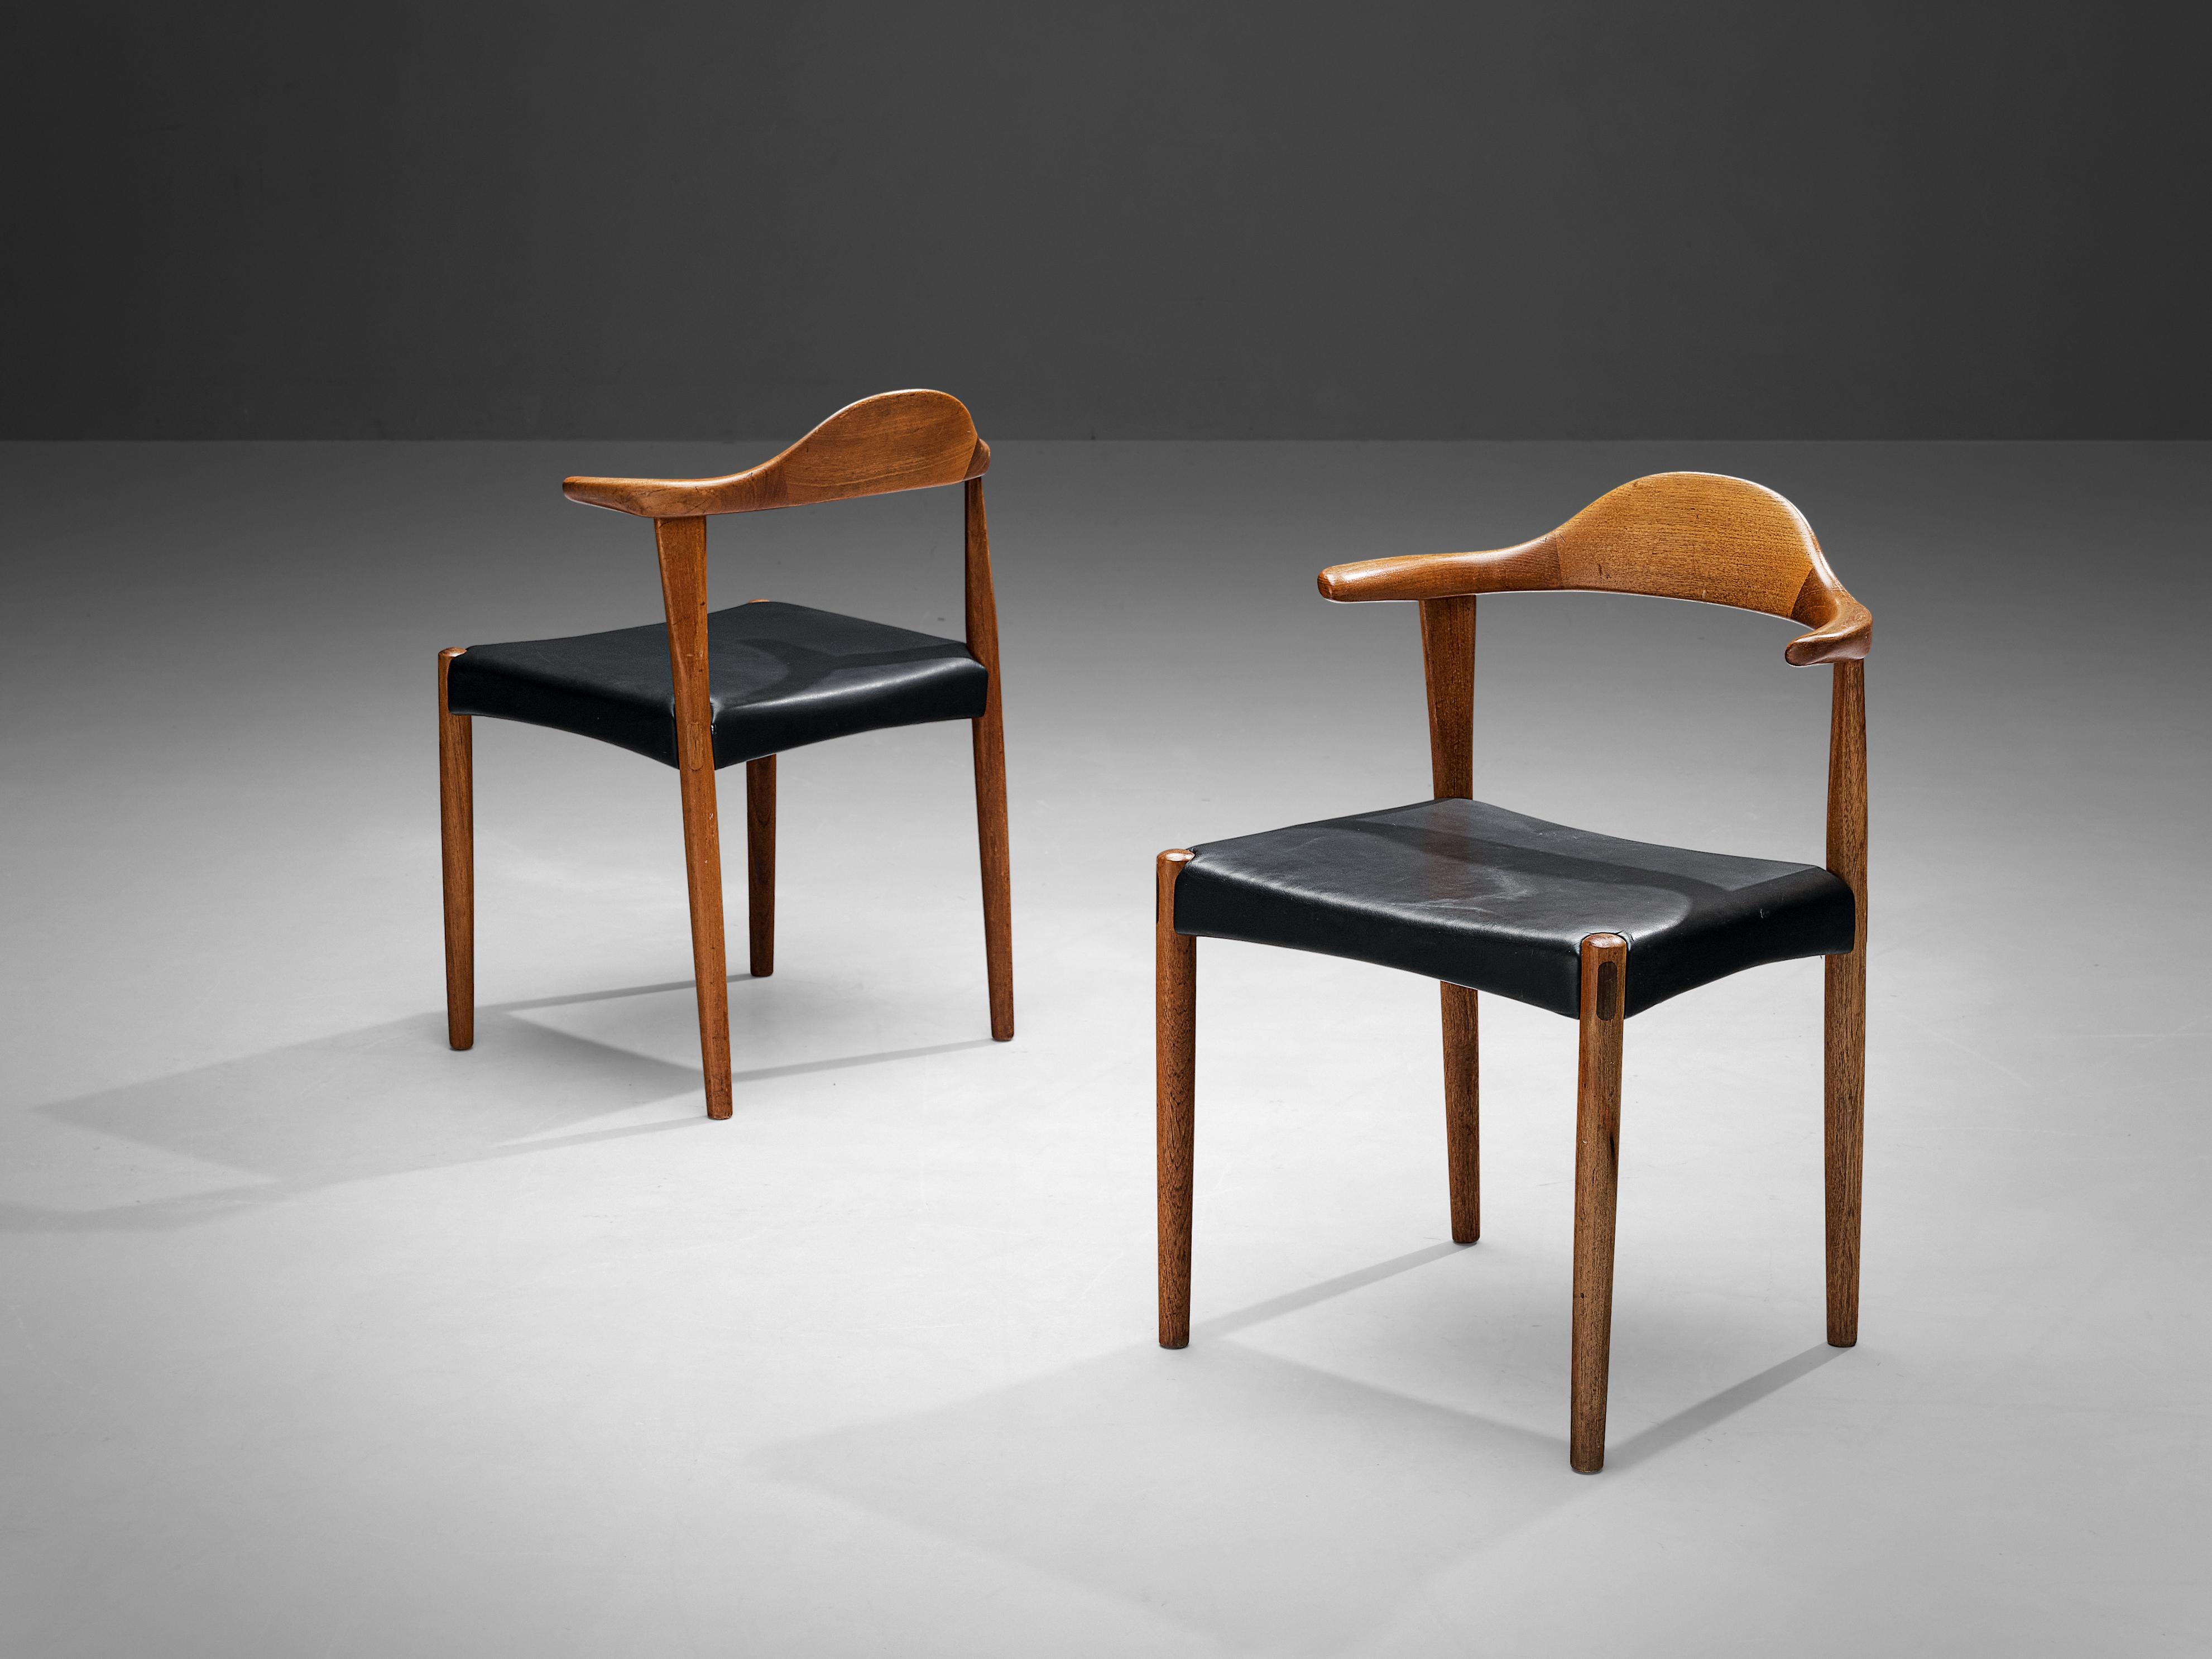 Harry Østergaard pour Randers Møbelfabrik, chaises 'Bull Horn', teck, simili cuir, années 1950

Cette paire de chaises de salle à manger en teck a été conçue par Harris Østergaard pour Randers Møbelfabrik dans les années 1950. Ce modèle est doté des